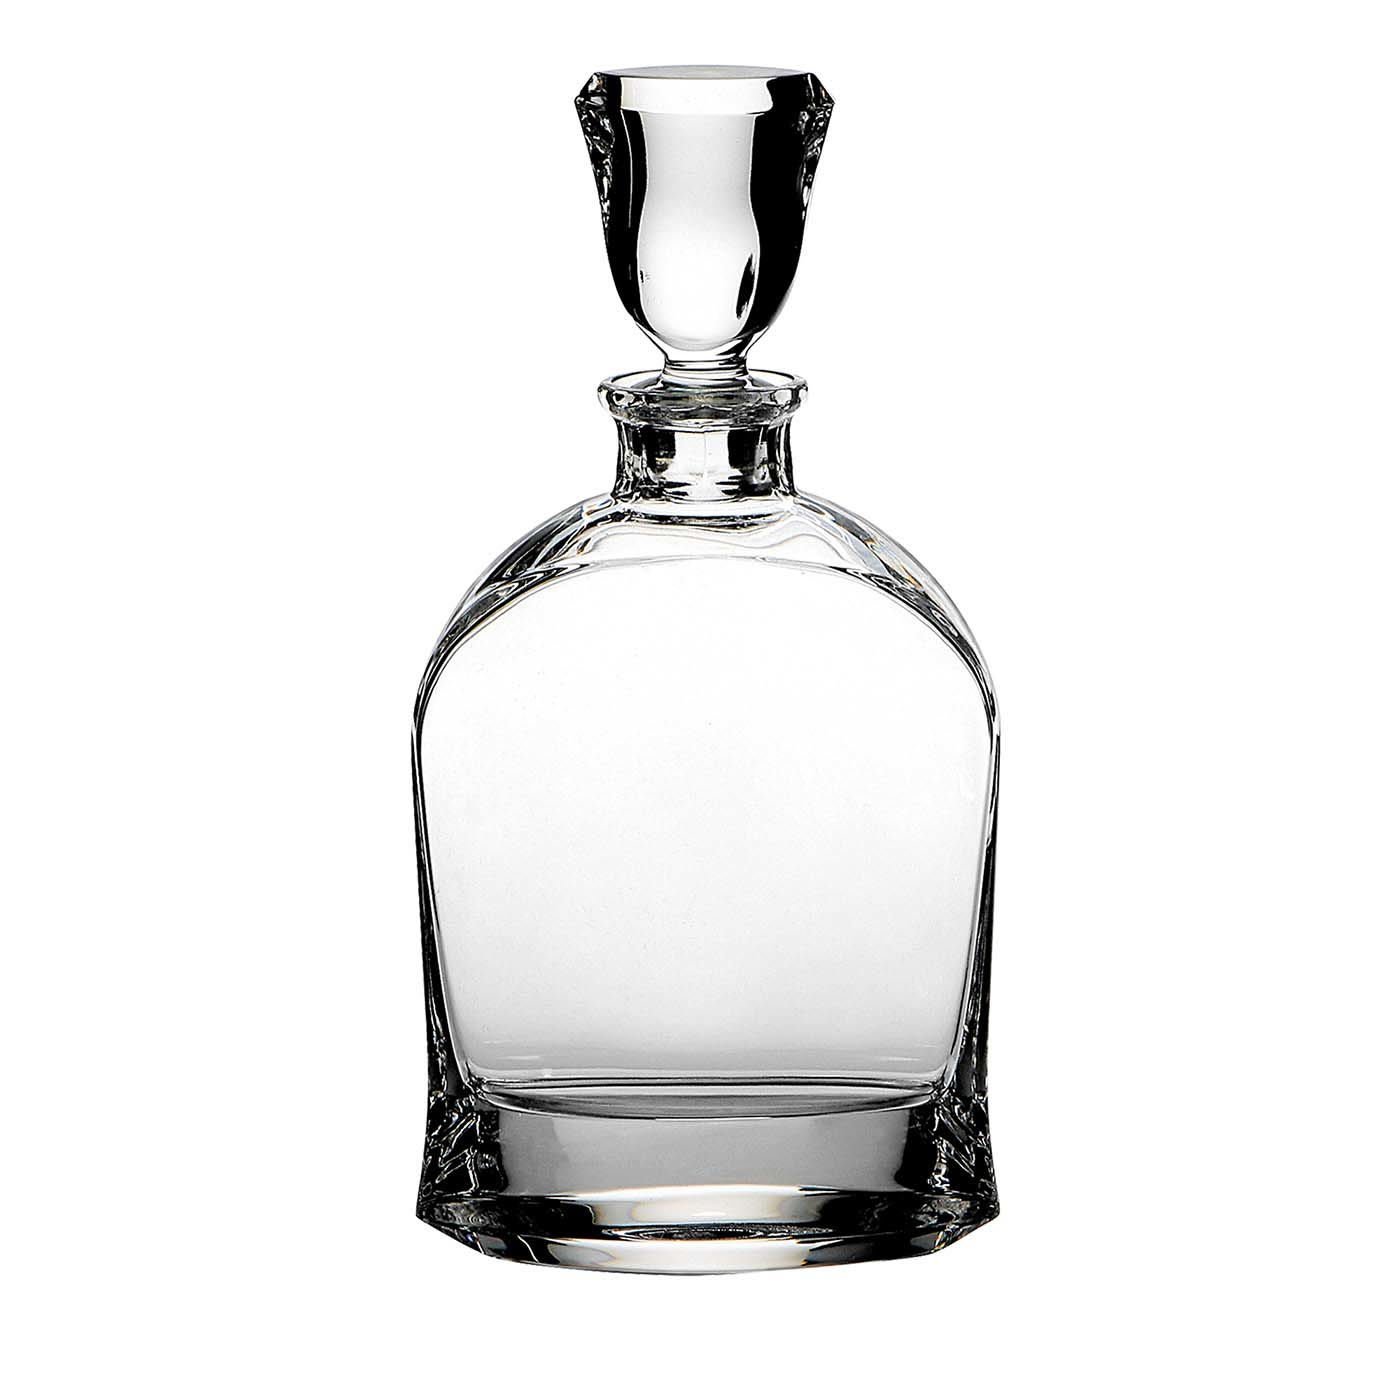 Selene Liquor Bottle - Cristalleria ColleVilca